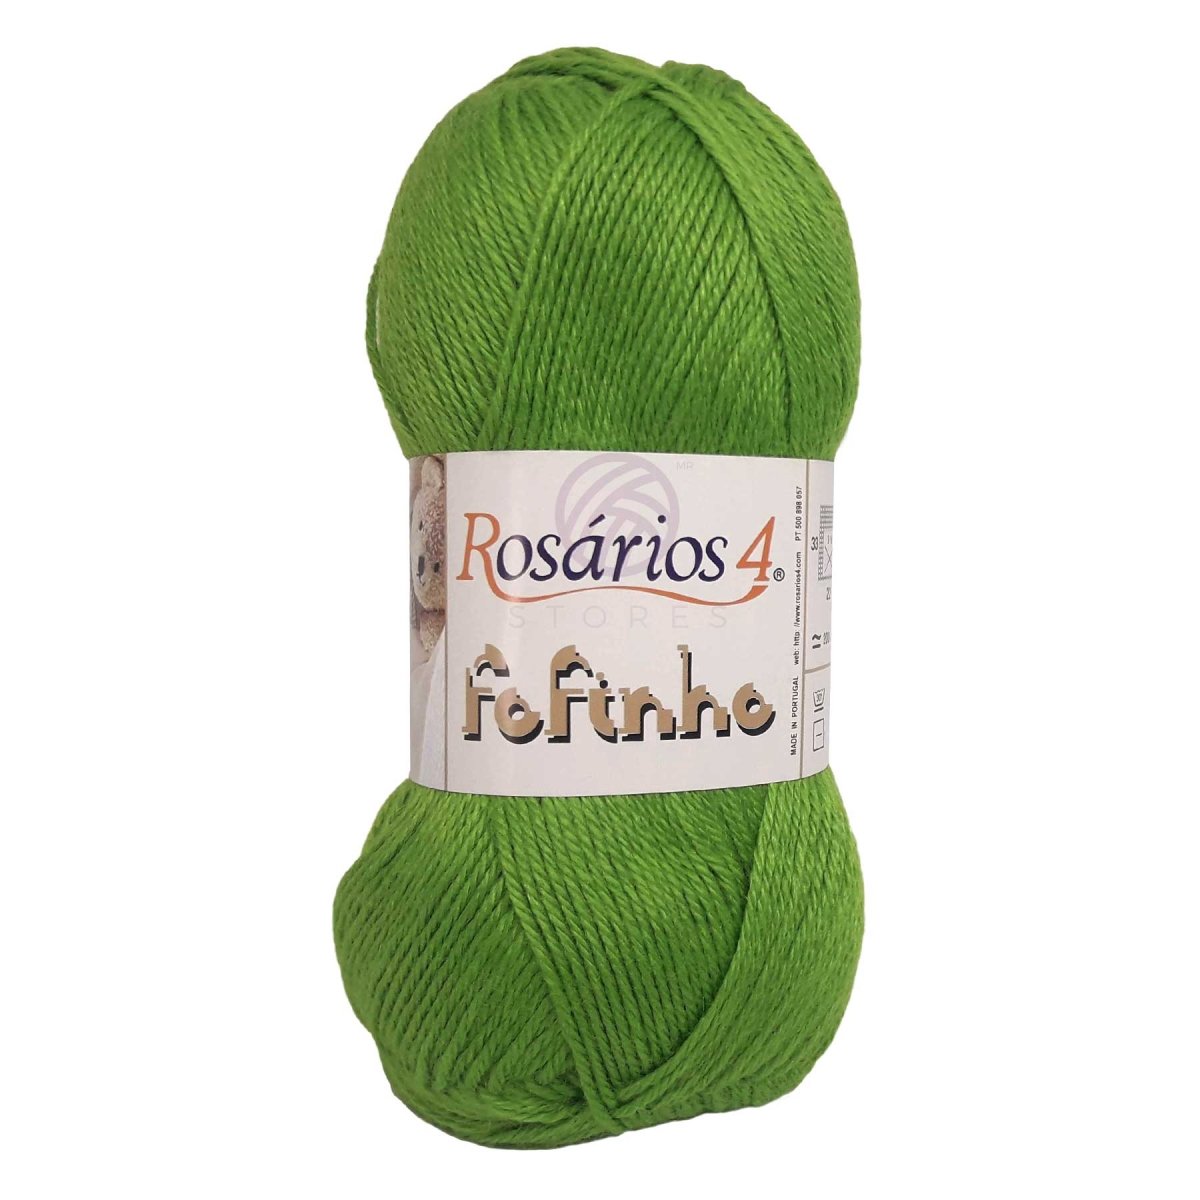 FOFINHO - Crochetstores441-145606850441144